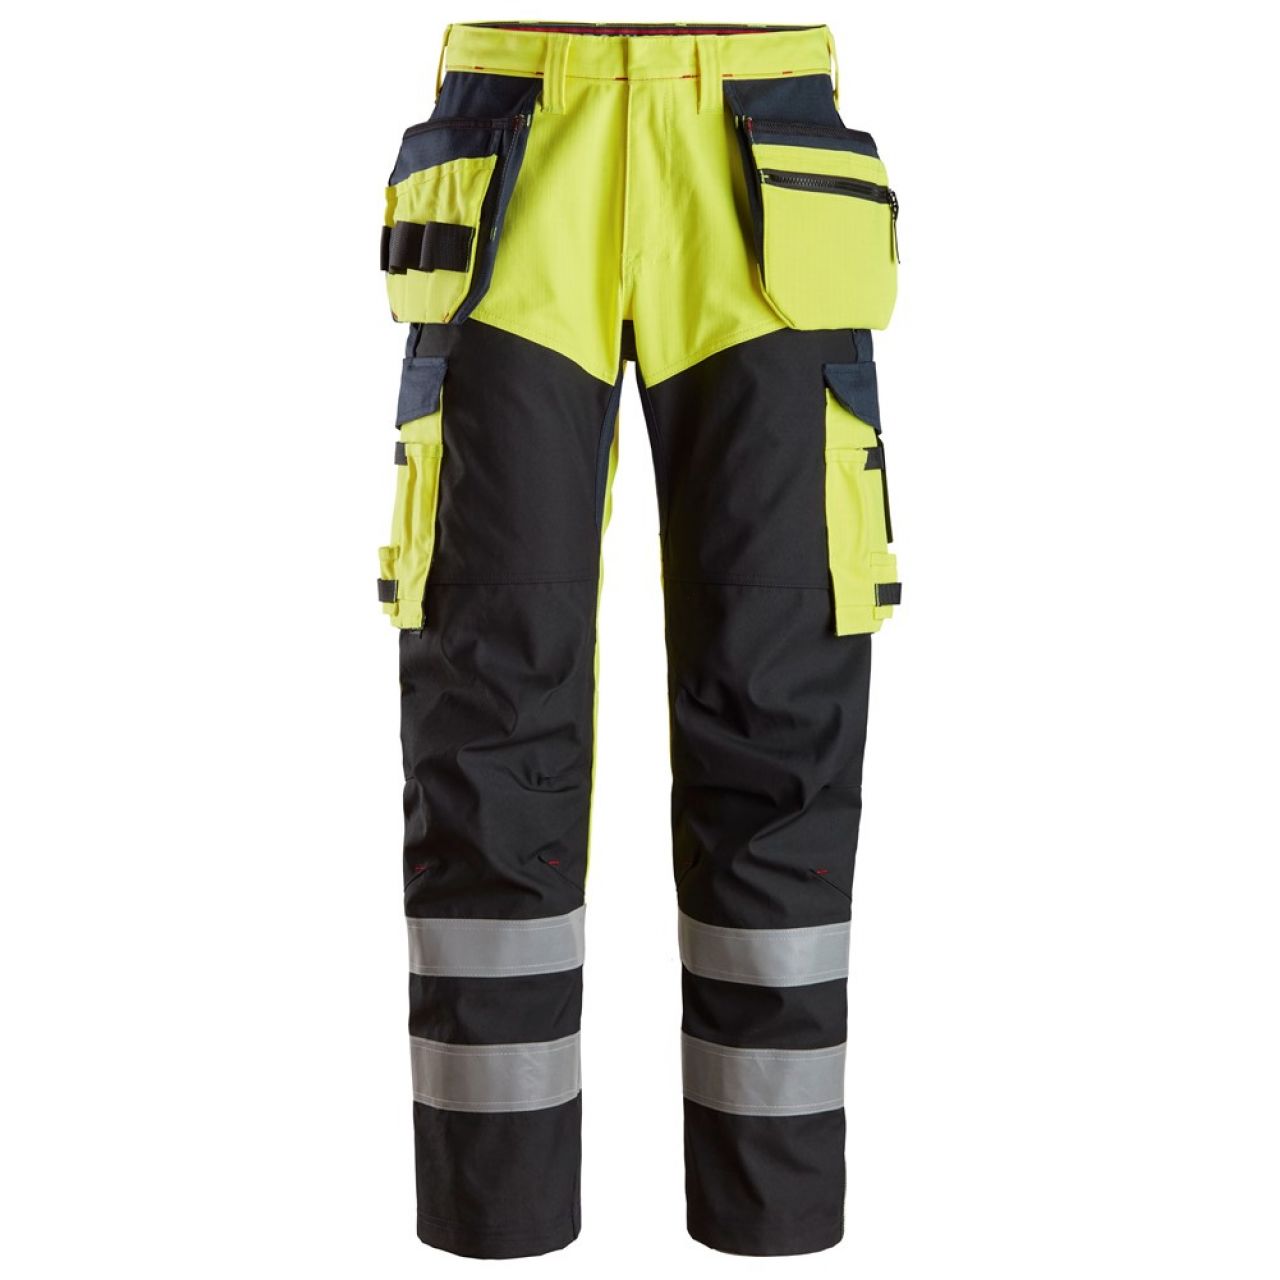 6265 Pantalones largos de trabajo de alta visibilidad clase 1 con bolsillos flotantes y espinilla reforzada ProtecWork amarillo-azul marino talla 150